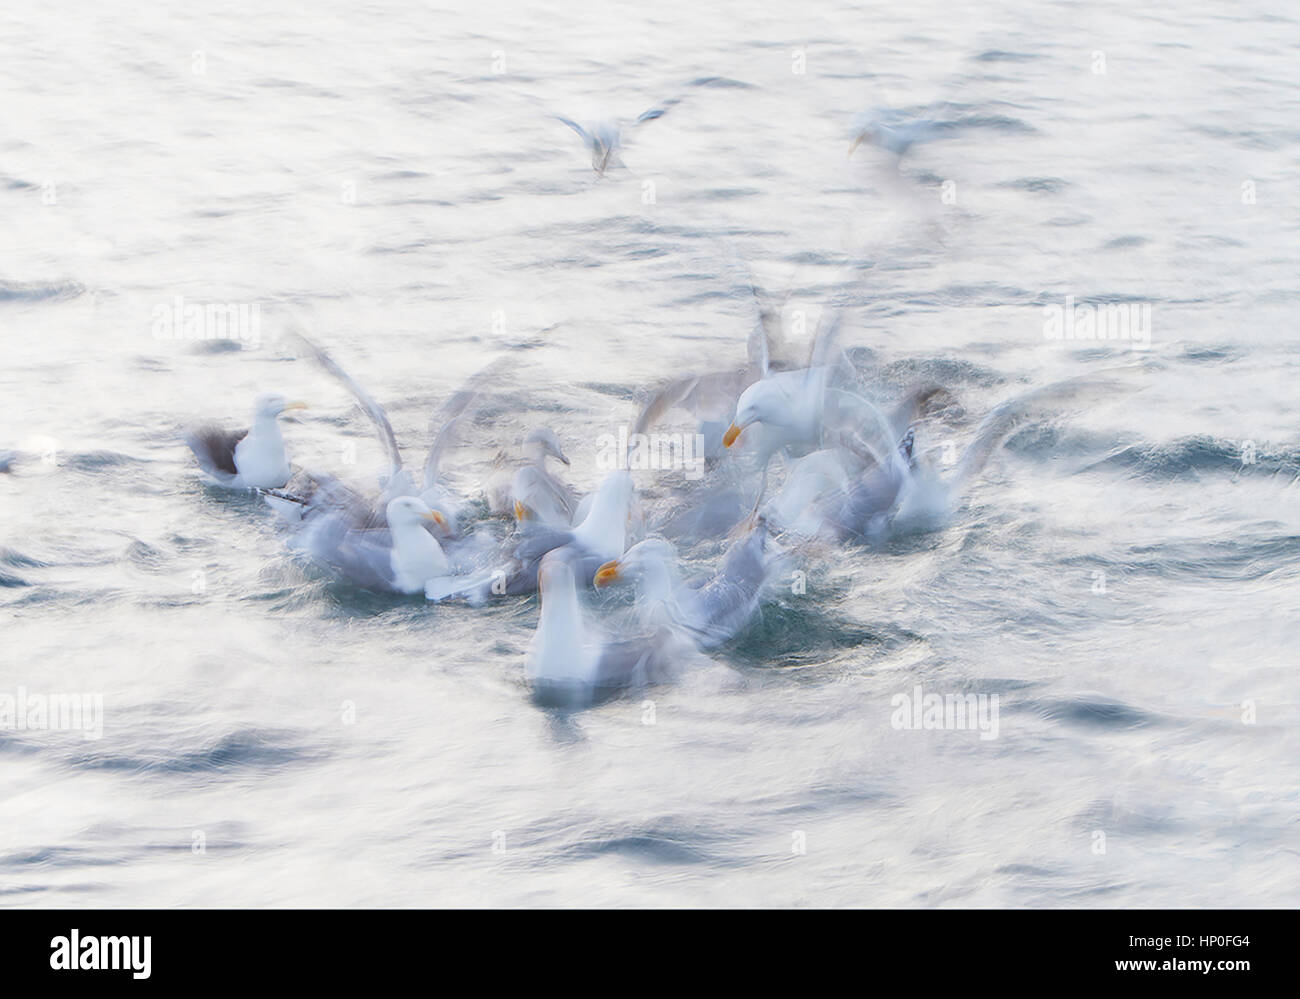 Vitesse d'obturation lente tourné d'un groupe de goélands argentés (Larus argentatus) plongée sous-marine et la lutte pour la nourriture sur la surface de la mer Banque D'Images